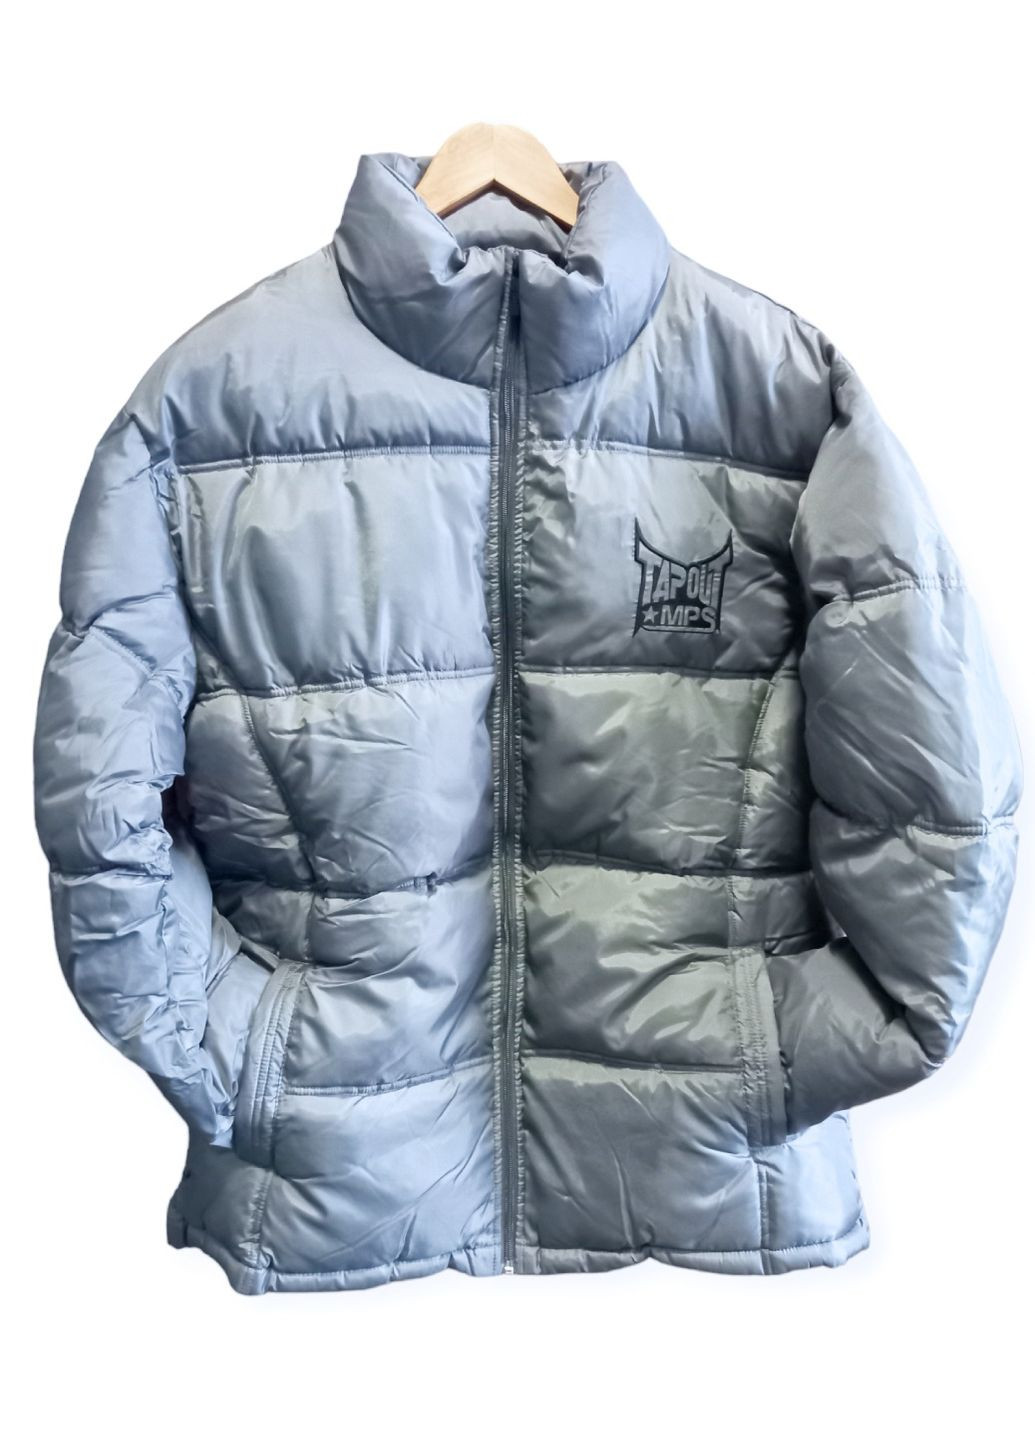 Срібна демісезонна фірмова куртка чоловіча нова синтепон сіра xl з внутрішньою кишенею тепла Tapout